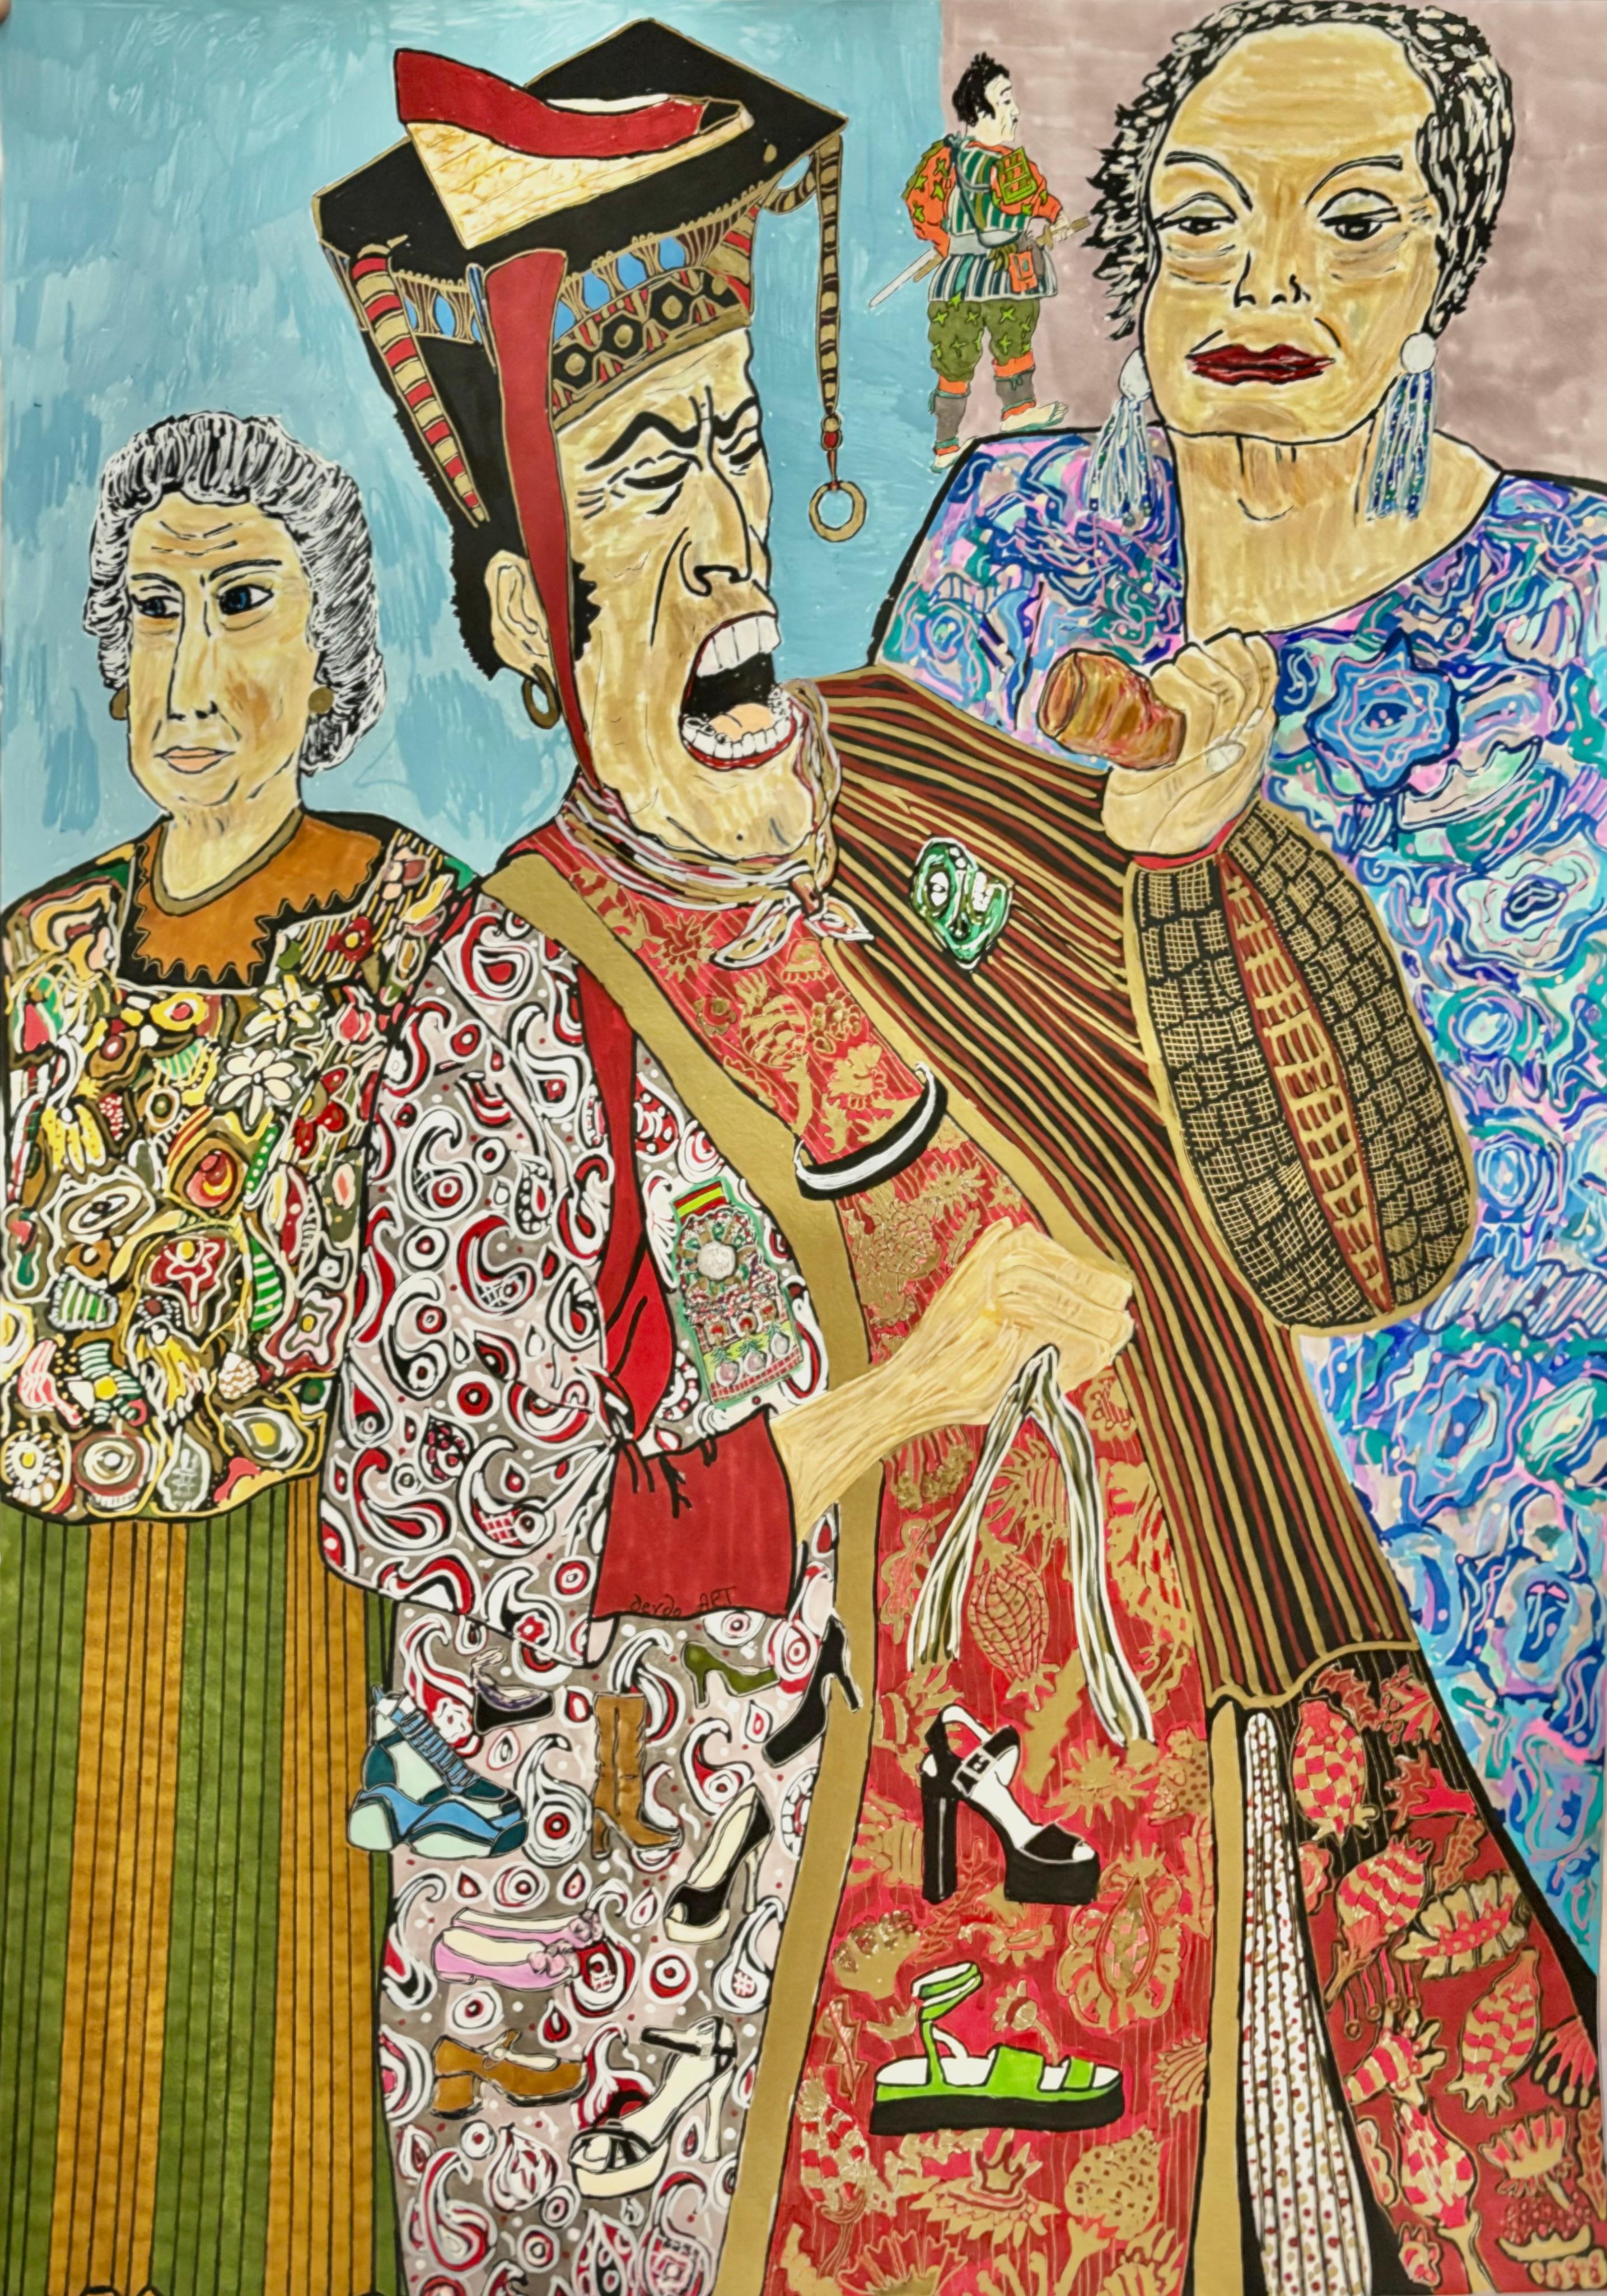 Mischtechnik, Acryl und Tinte auf Papier

Nino Devdariani ist ein georgischer Künstler, der 1970 geboren wurde und in Tiflis, Georgien, lebt und arbeitet. Ihre Inspiration ist die Wahrnehmung von positiven und negativen Emotionen, die sich im Laufe